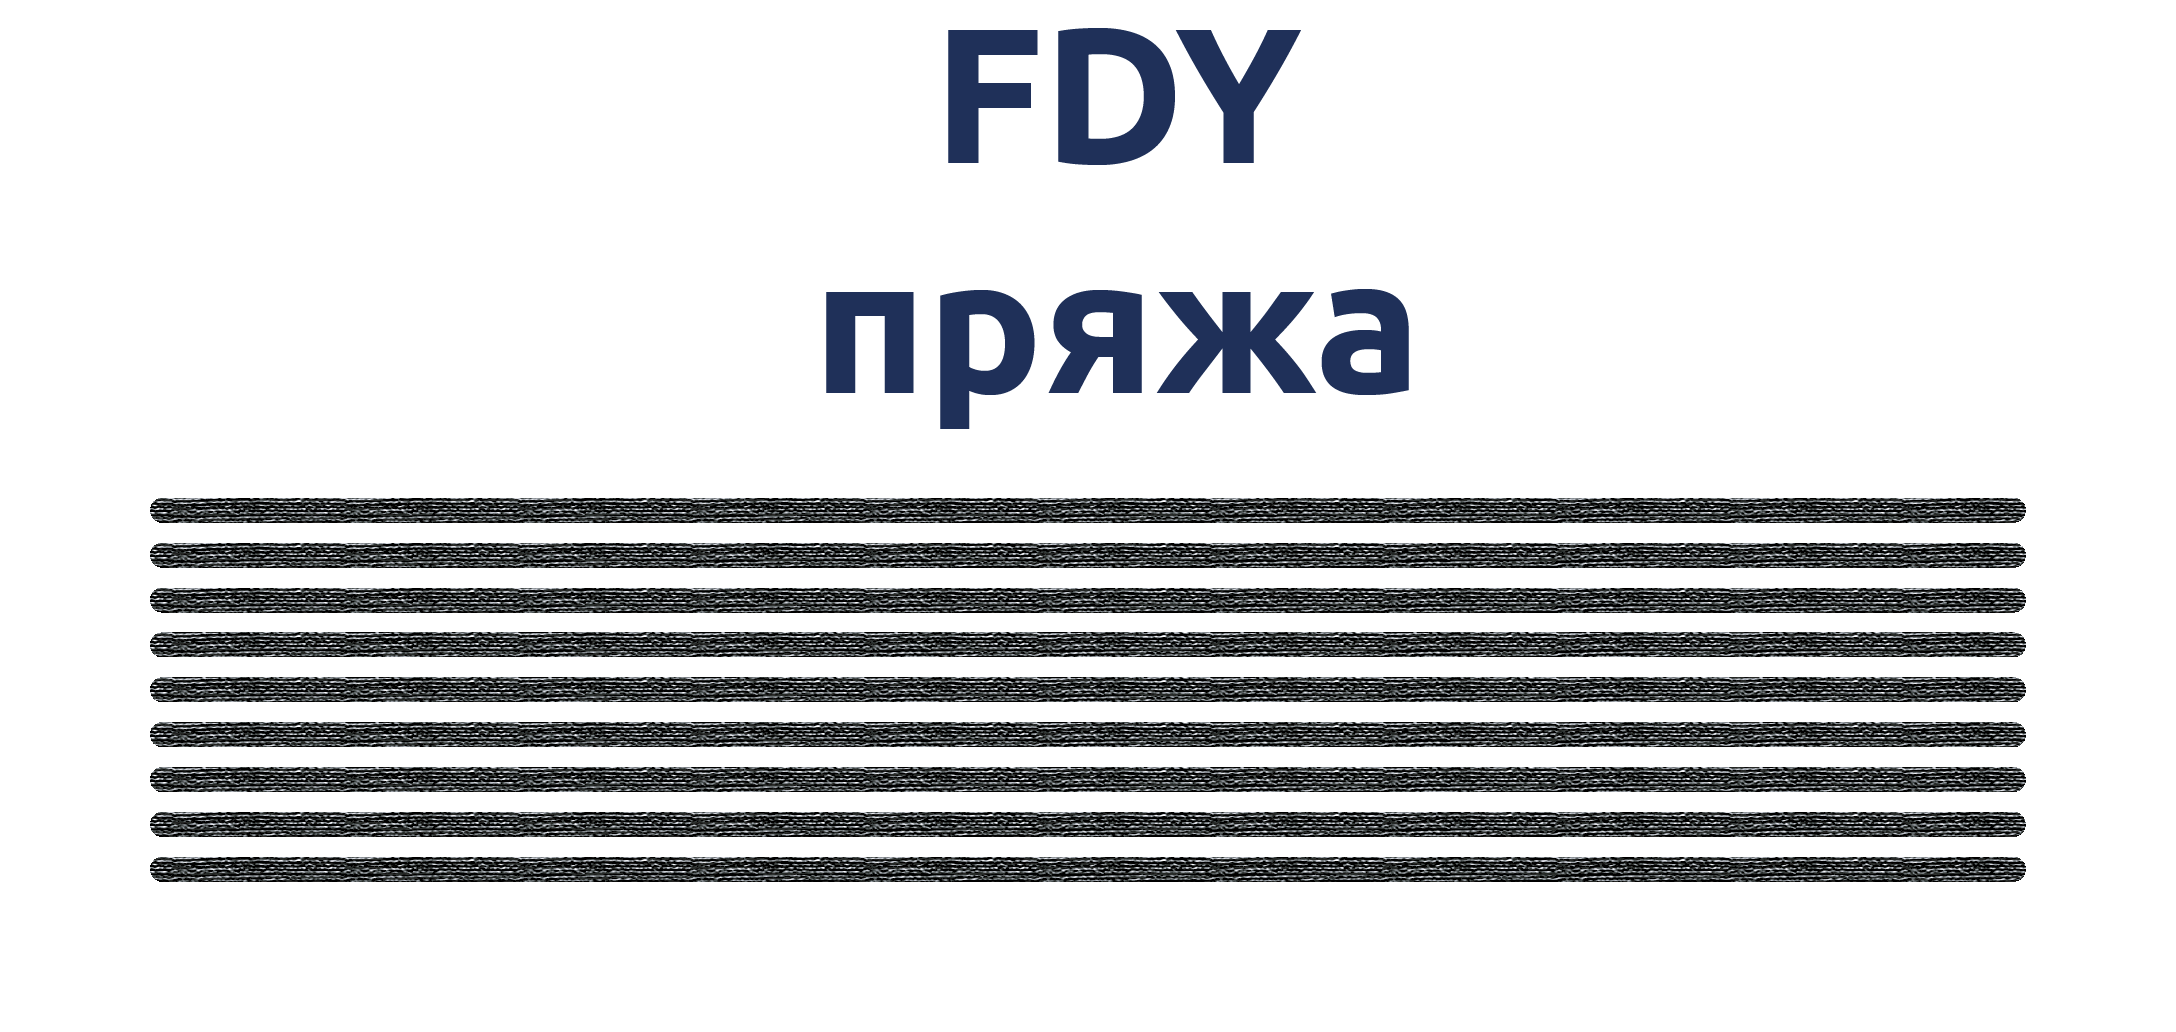 Схематическое изображение мультифиламентной FDY пряжи.png